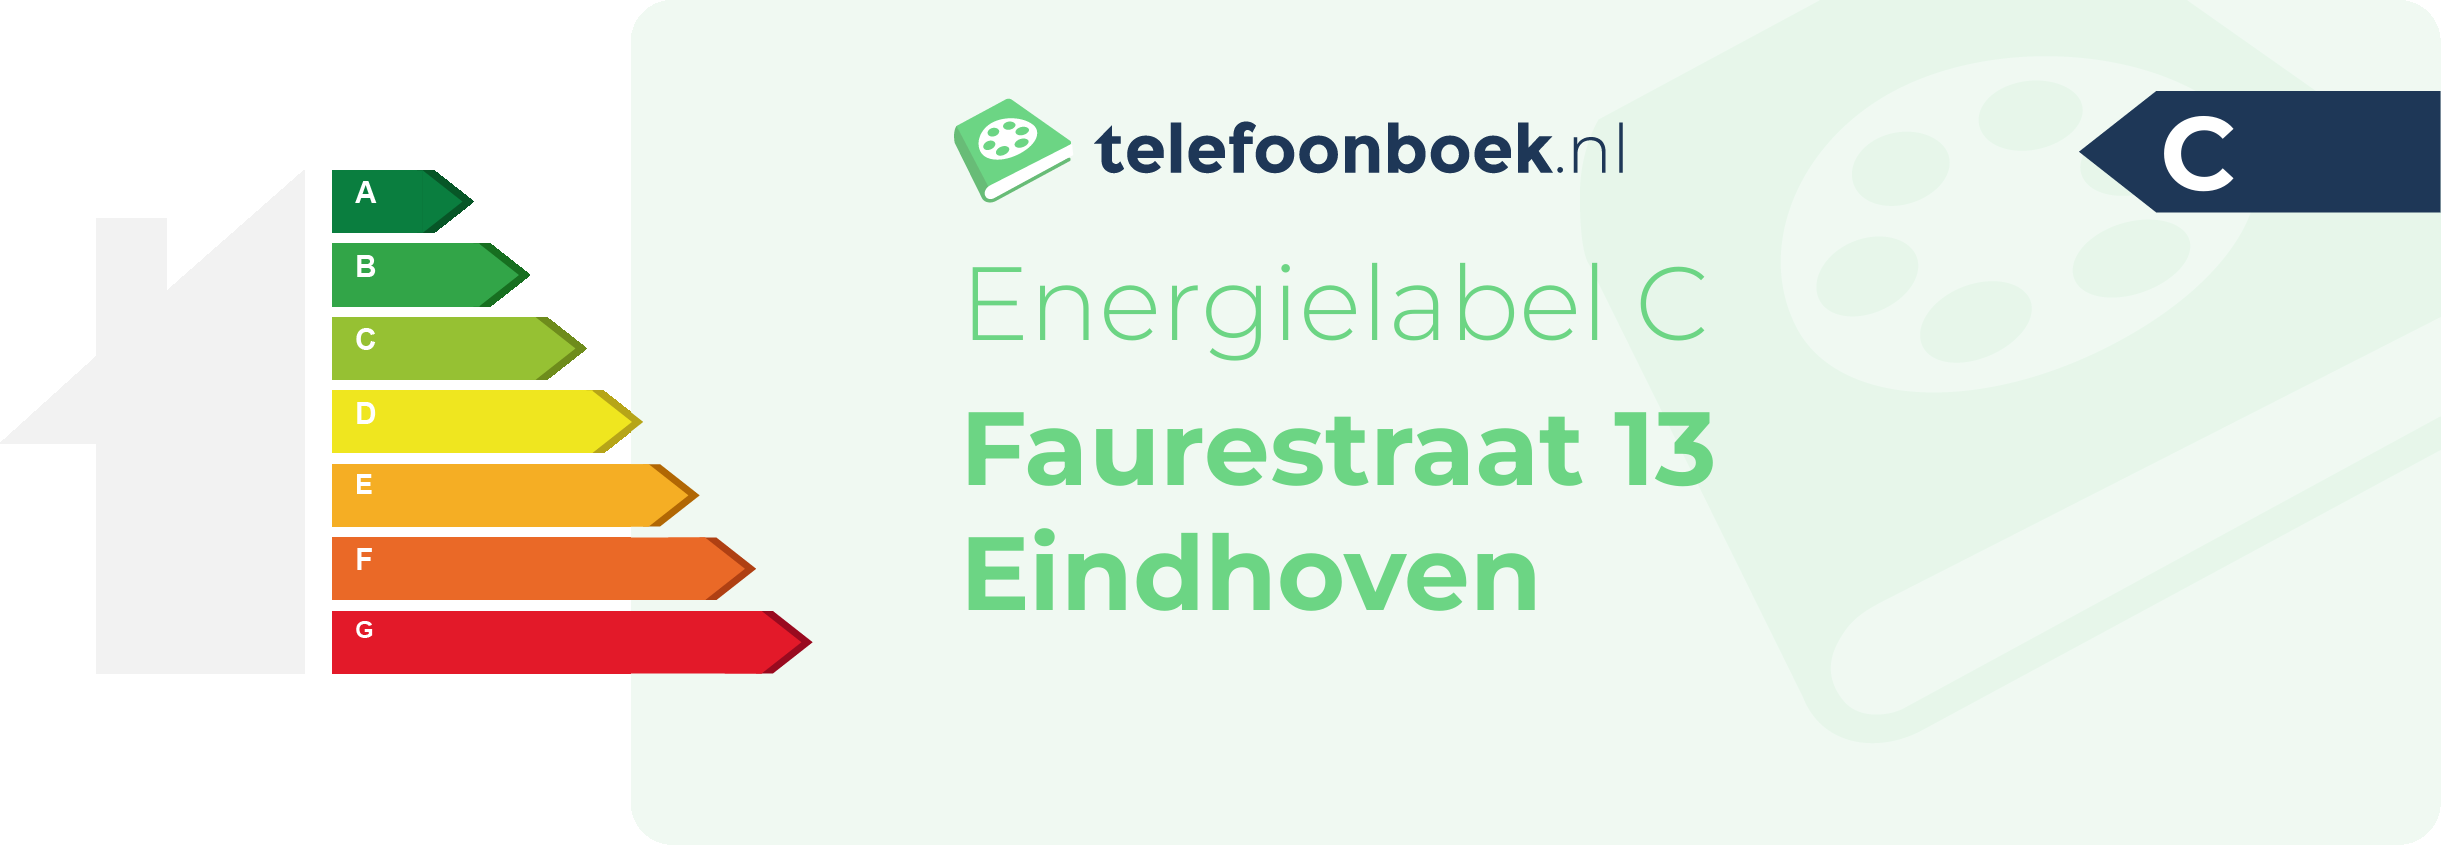 Energielabel Faurestraat 13 Eindhoven